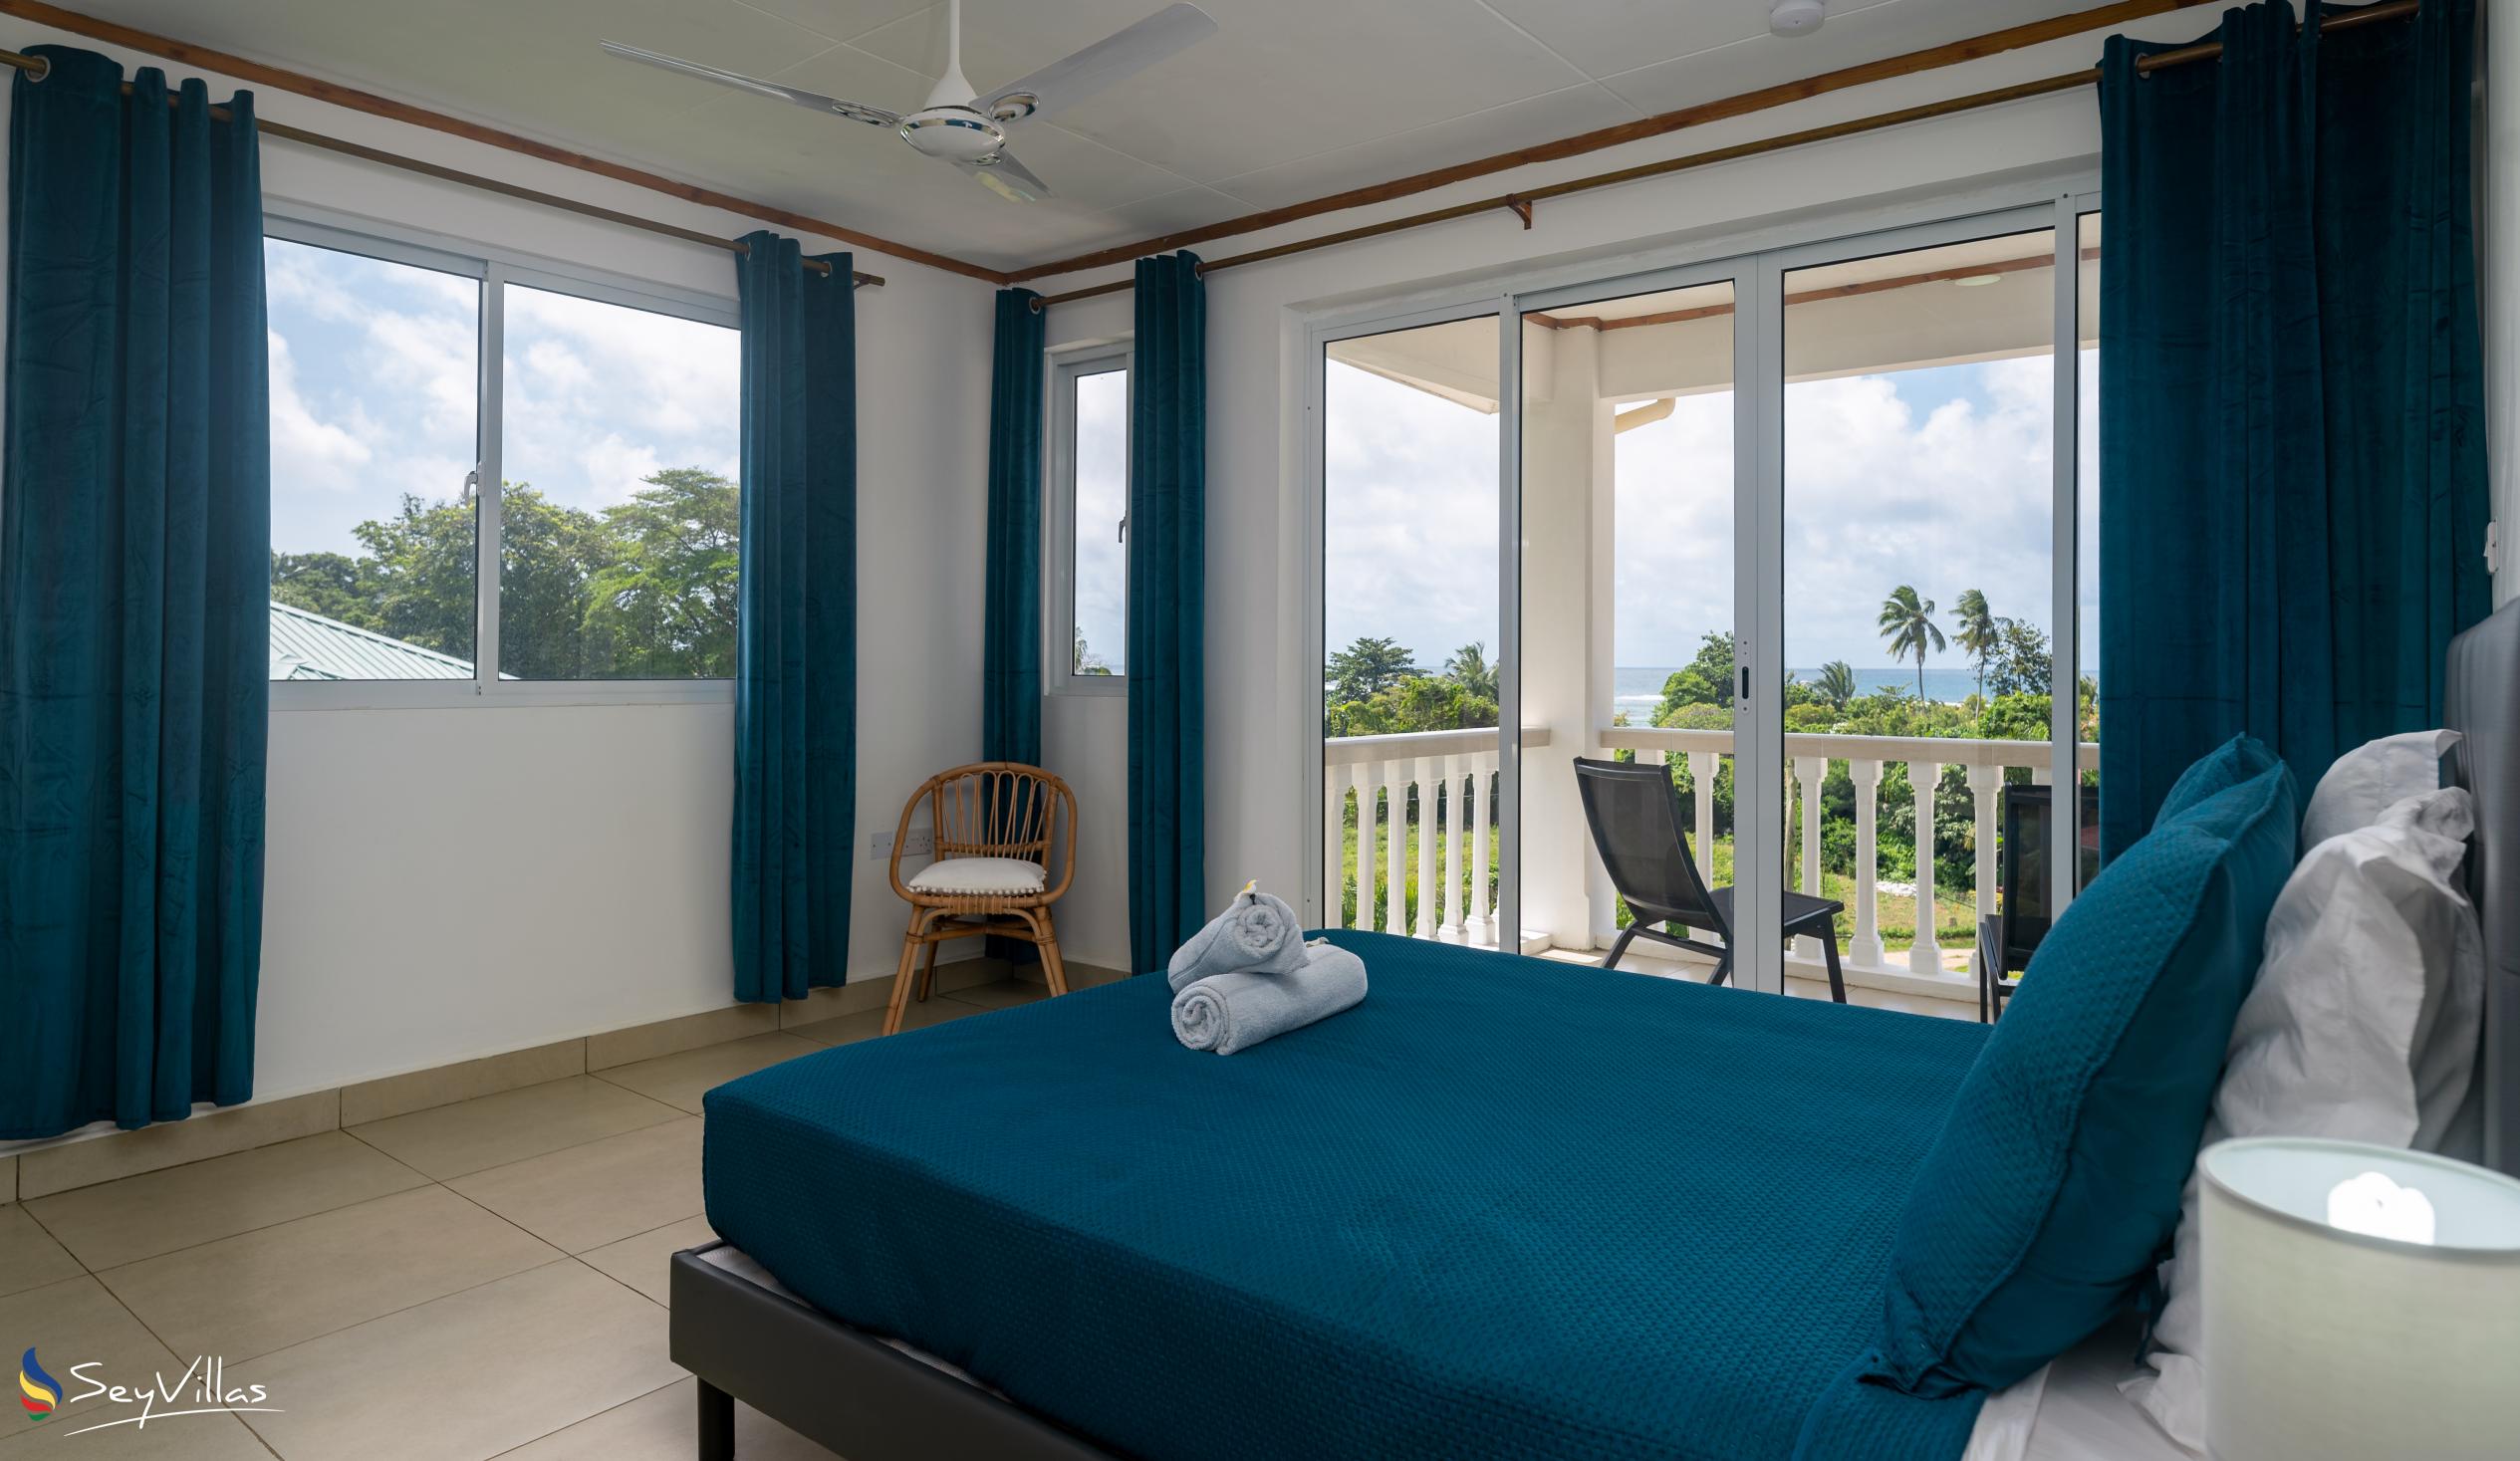 Photo 78: Cap Confort - 1-Bedroom Apartment - Mahé (Seychelles)